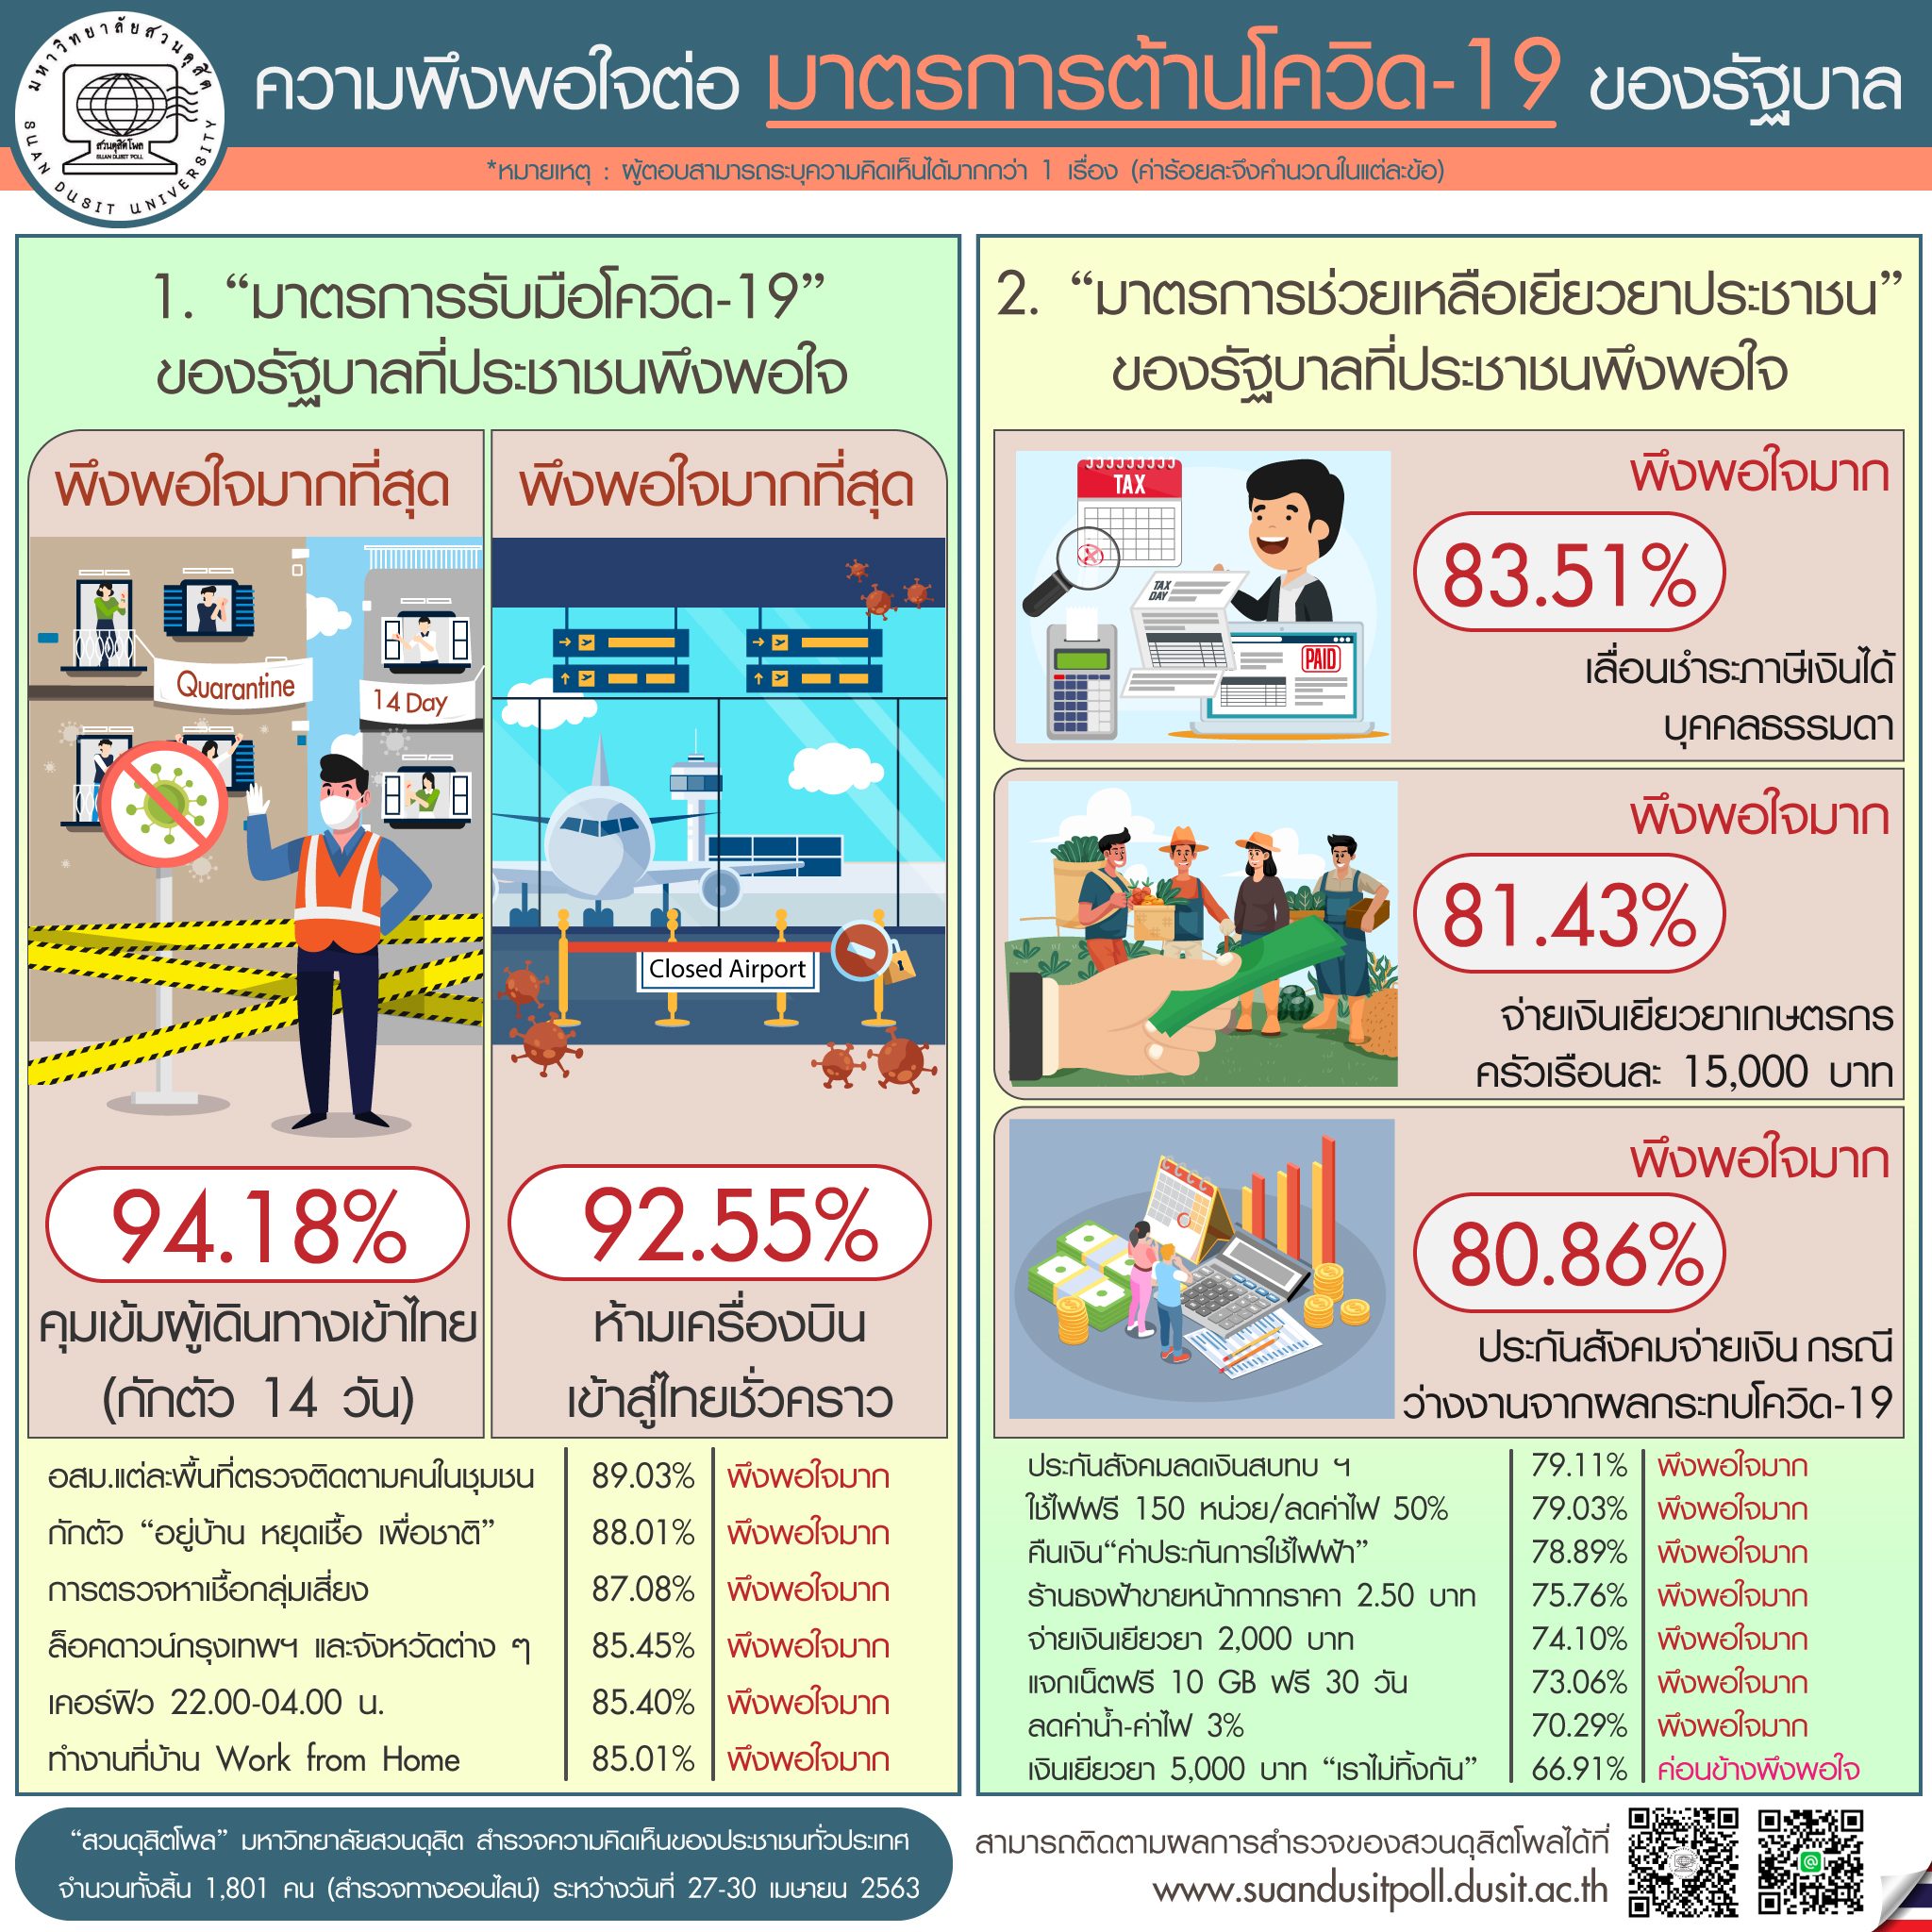 "สวนดุสิตโพล" เปิดผลสำรวจพบประชาชนส่วนใหญ่พอใจมาตรการกักตัว 14 วันเข้าไทย และเลื่อนจ่ายภาษีมากสุด